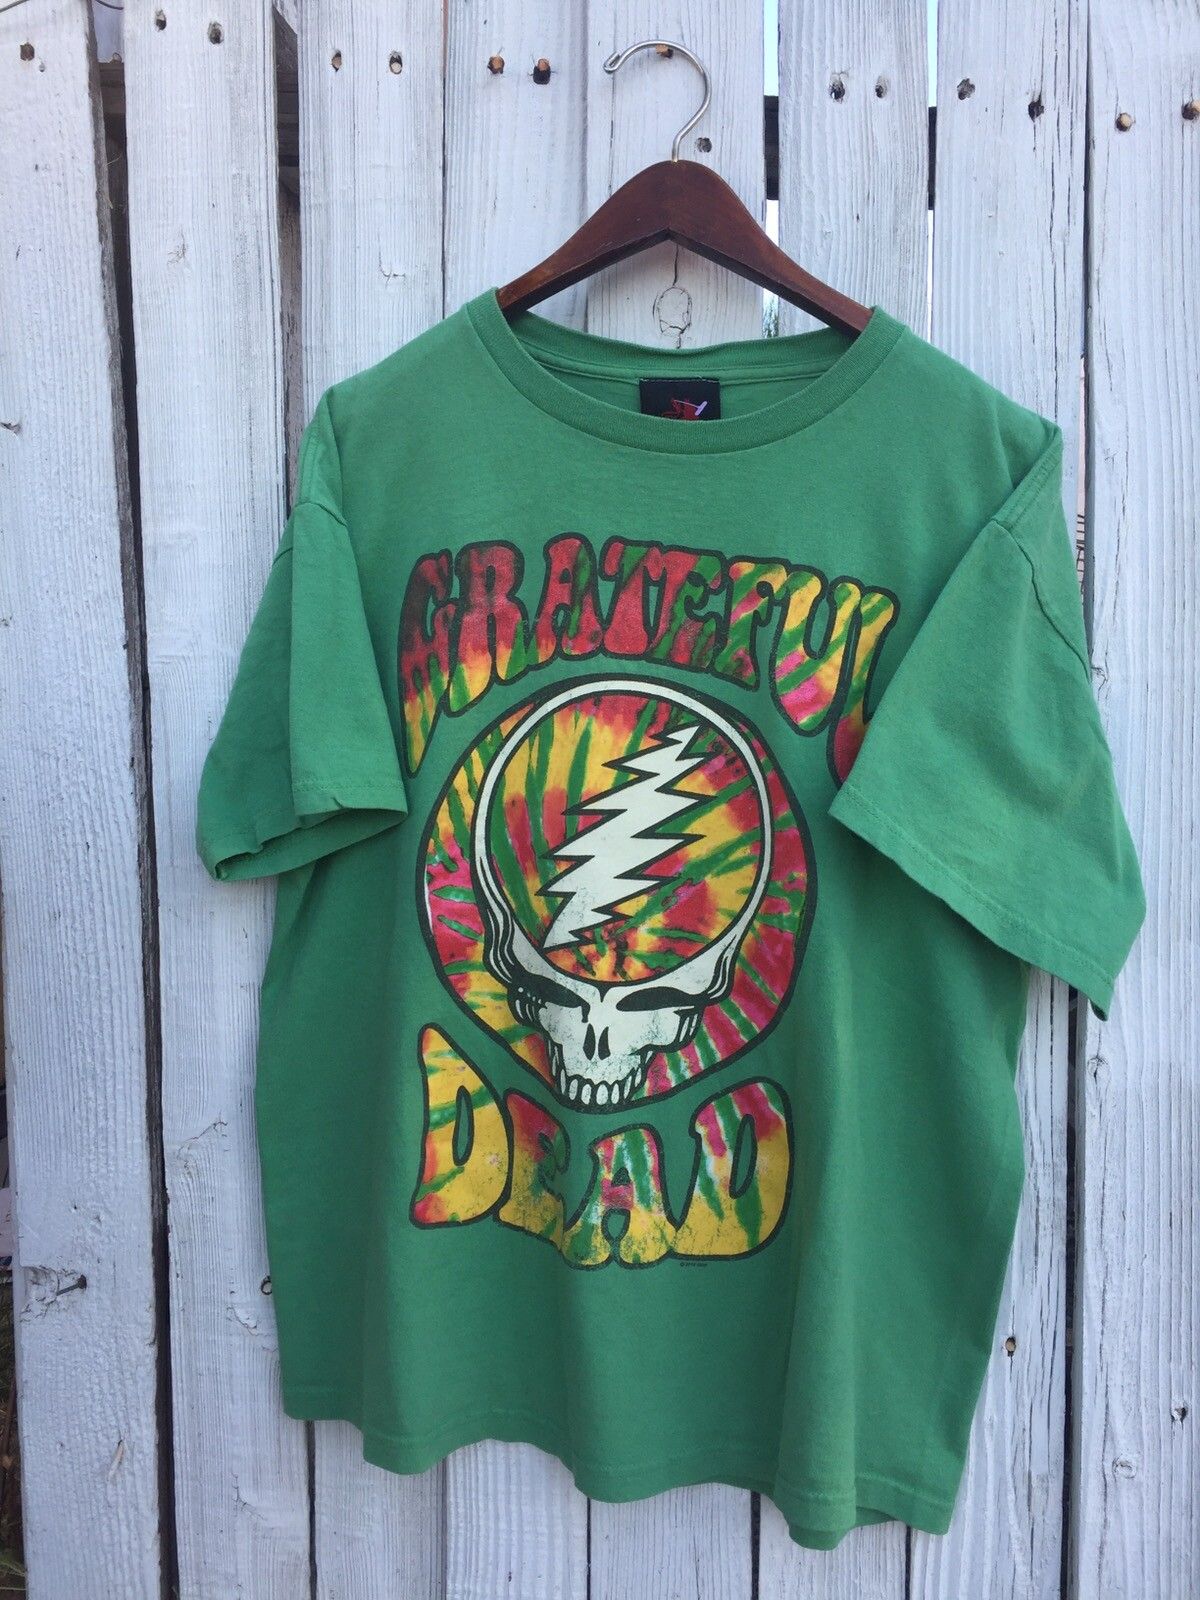 Vintage Vintage The Grateful Dead Green Tye Dye T Shirt Size US L / EU 52-54 / 3 - 1 Preview